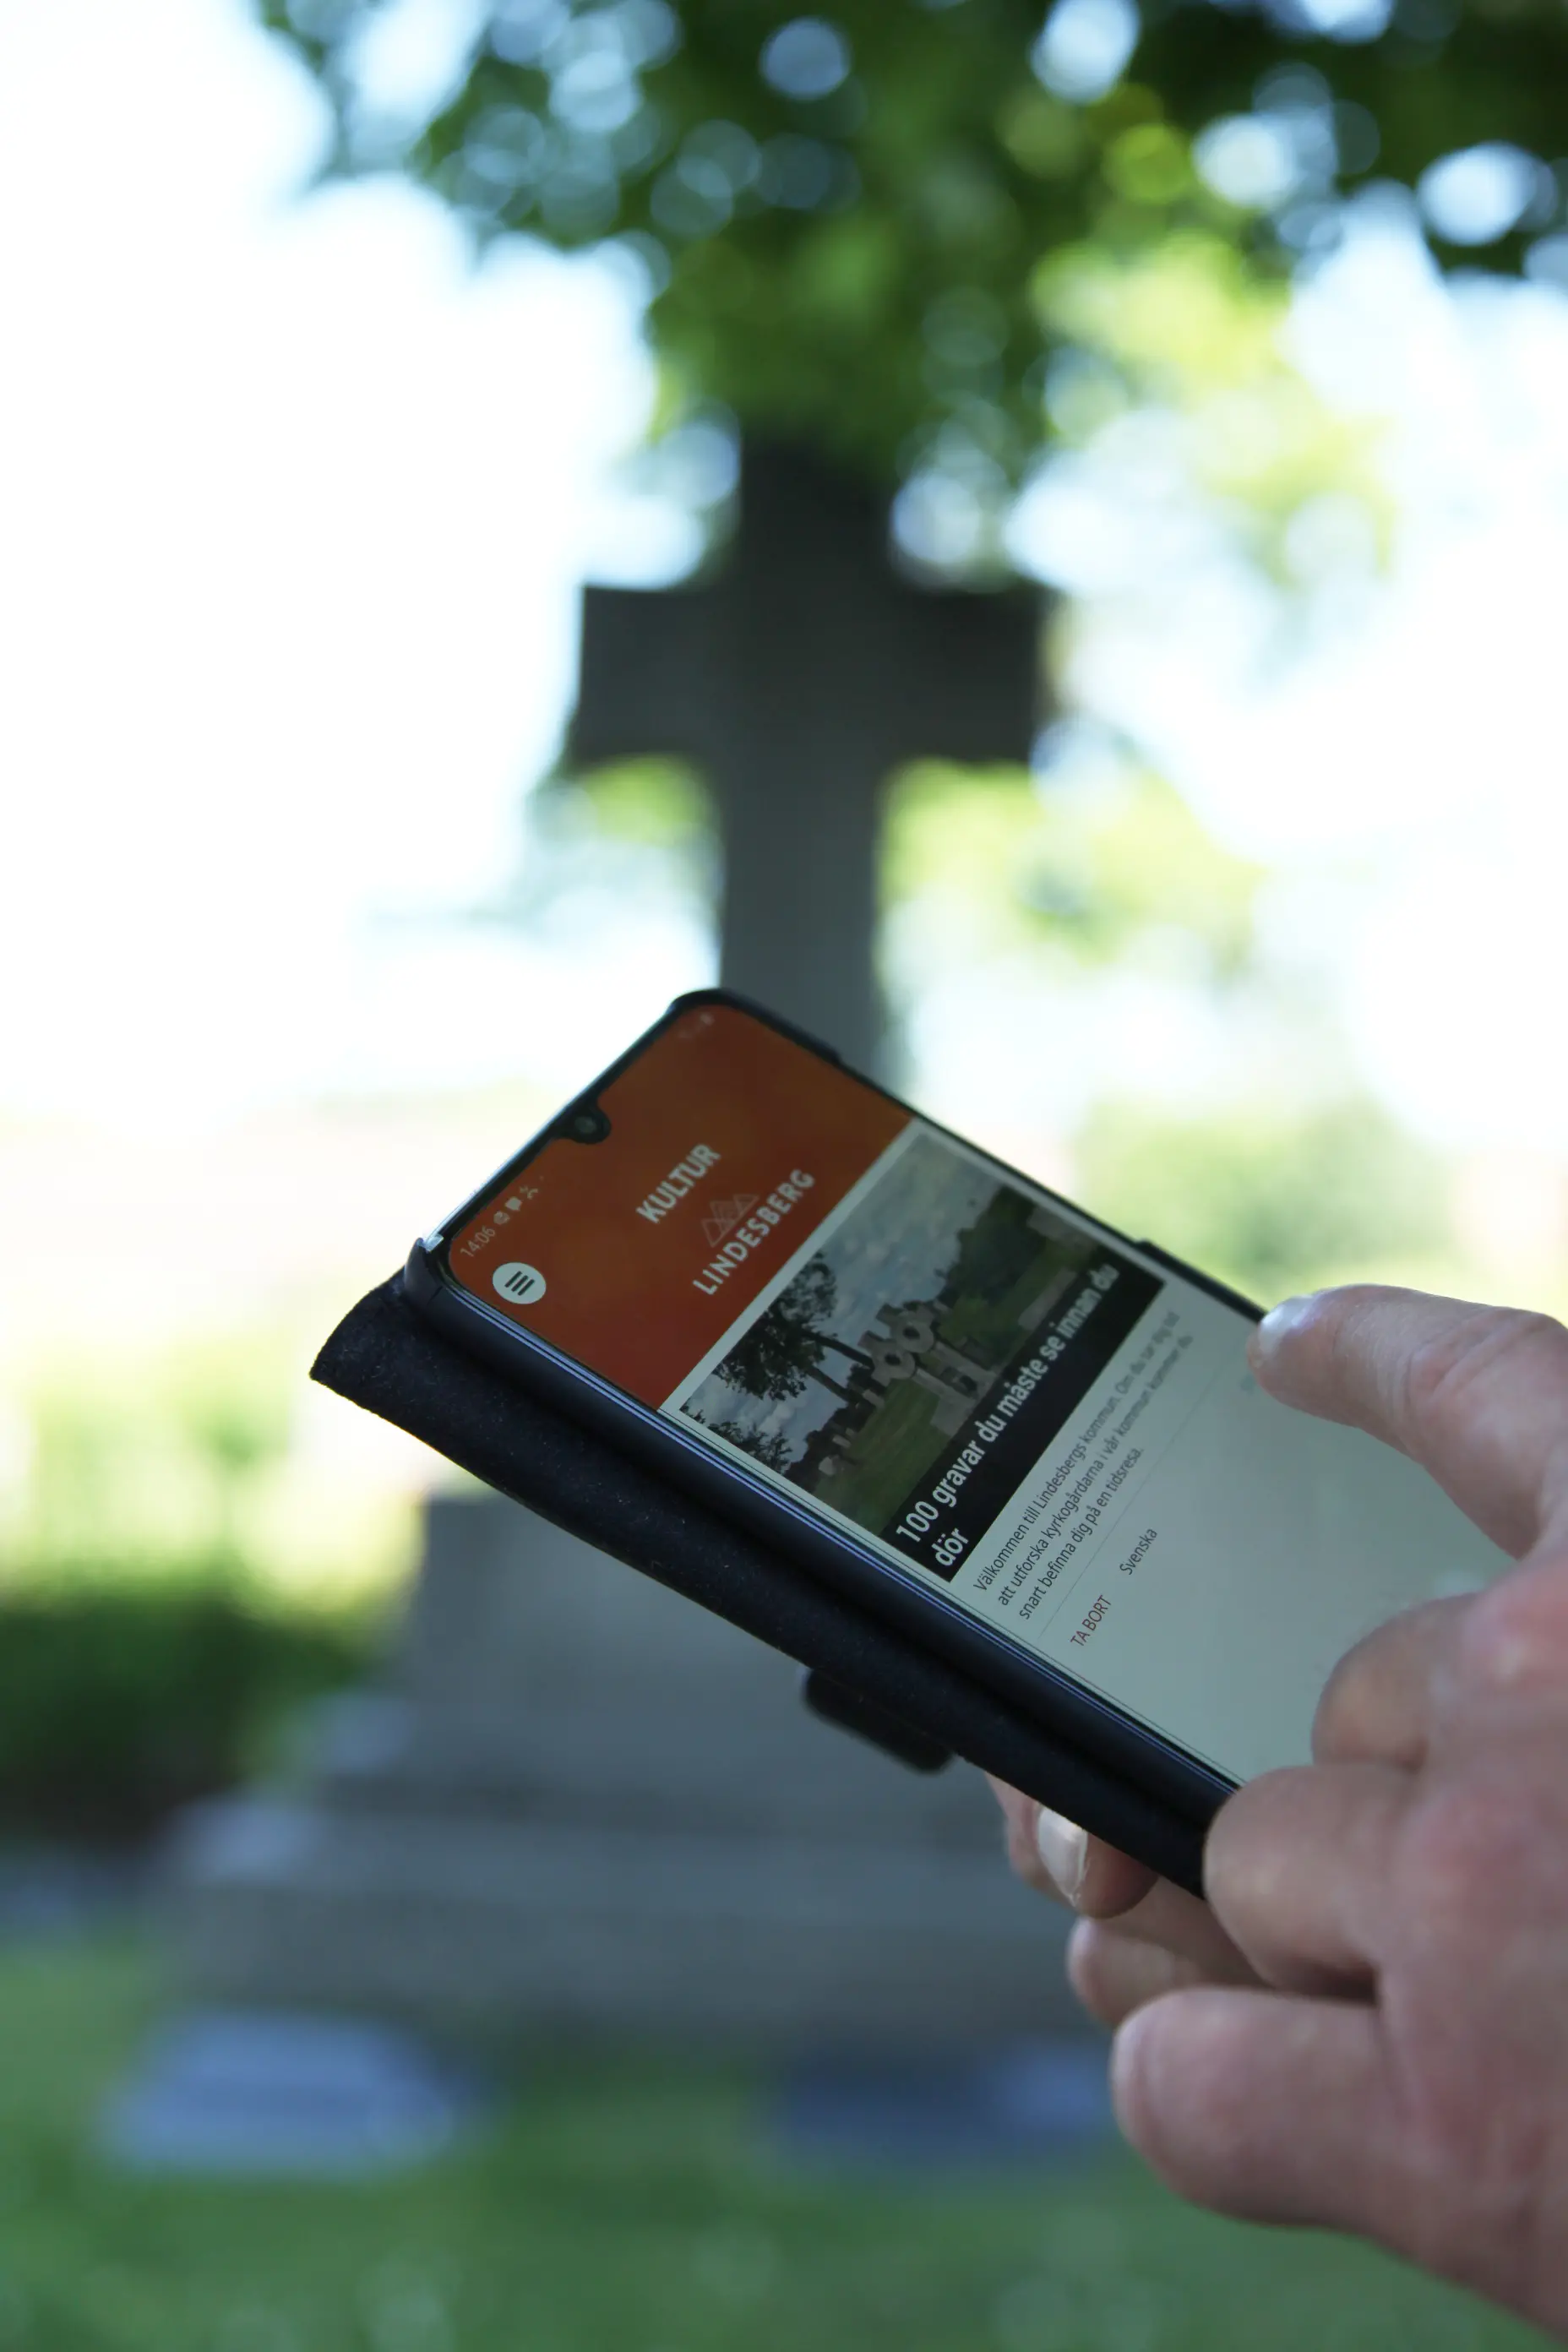 En hand som håller i en telefon som visar den digitala guiden 100 gravar du behöver se innan du dör.